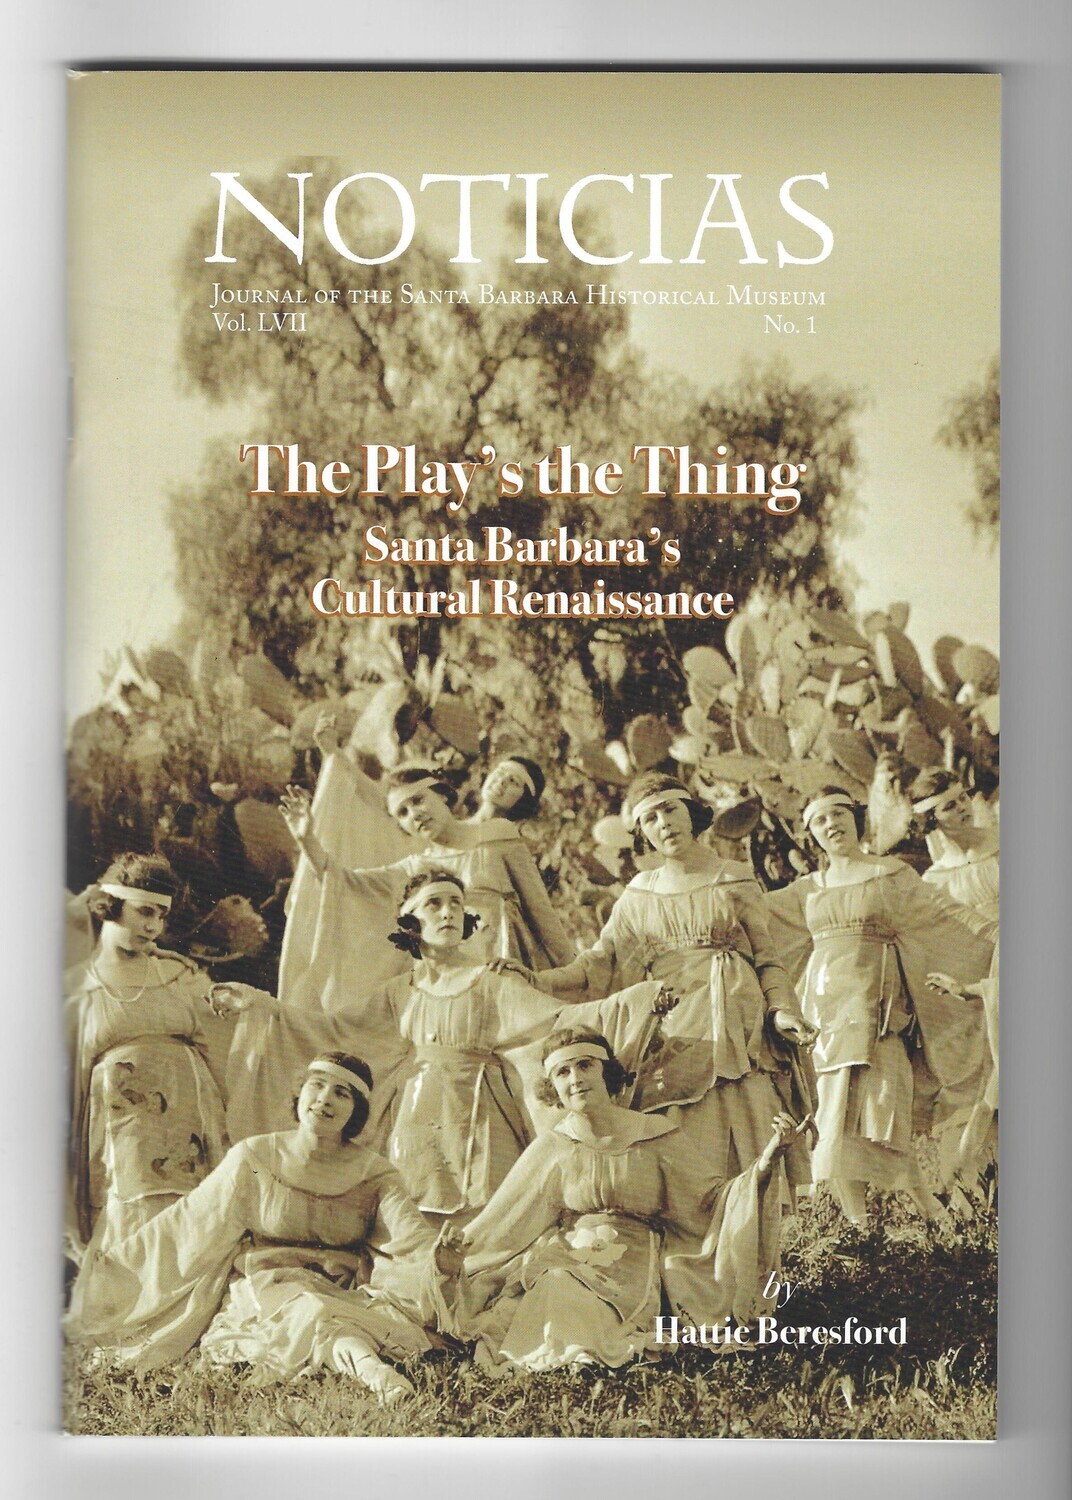 The Play's the Thing: Santa Barbara's Cultural Renaissance (Noticias Vol. LVII, No. 1)